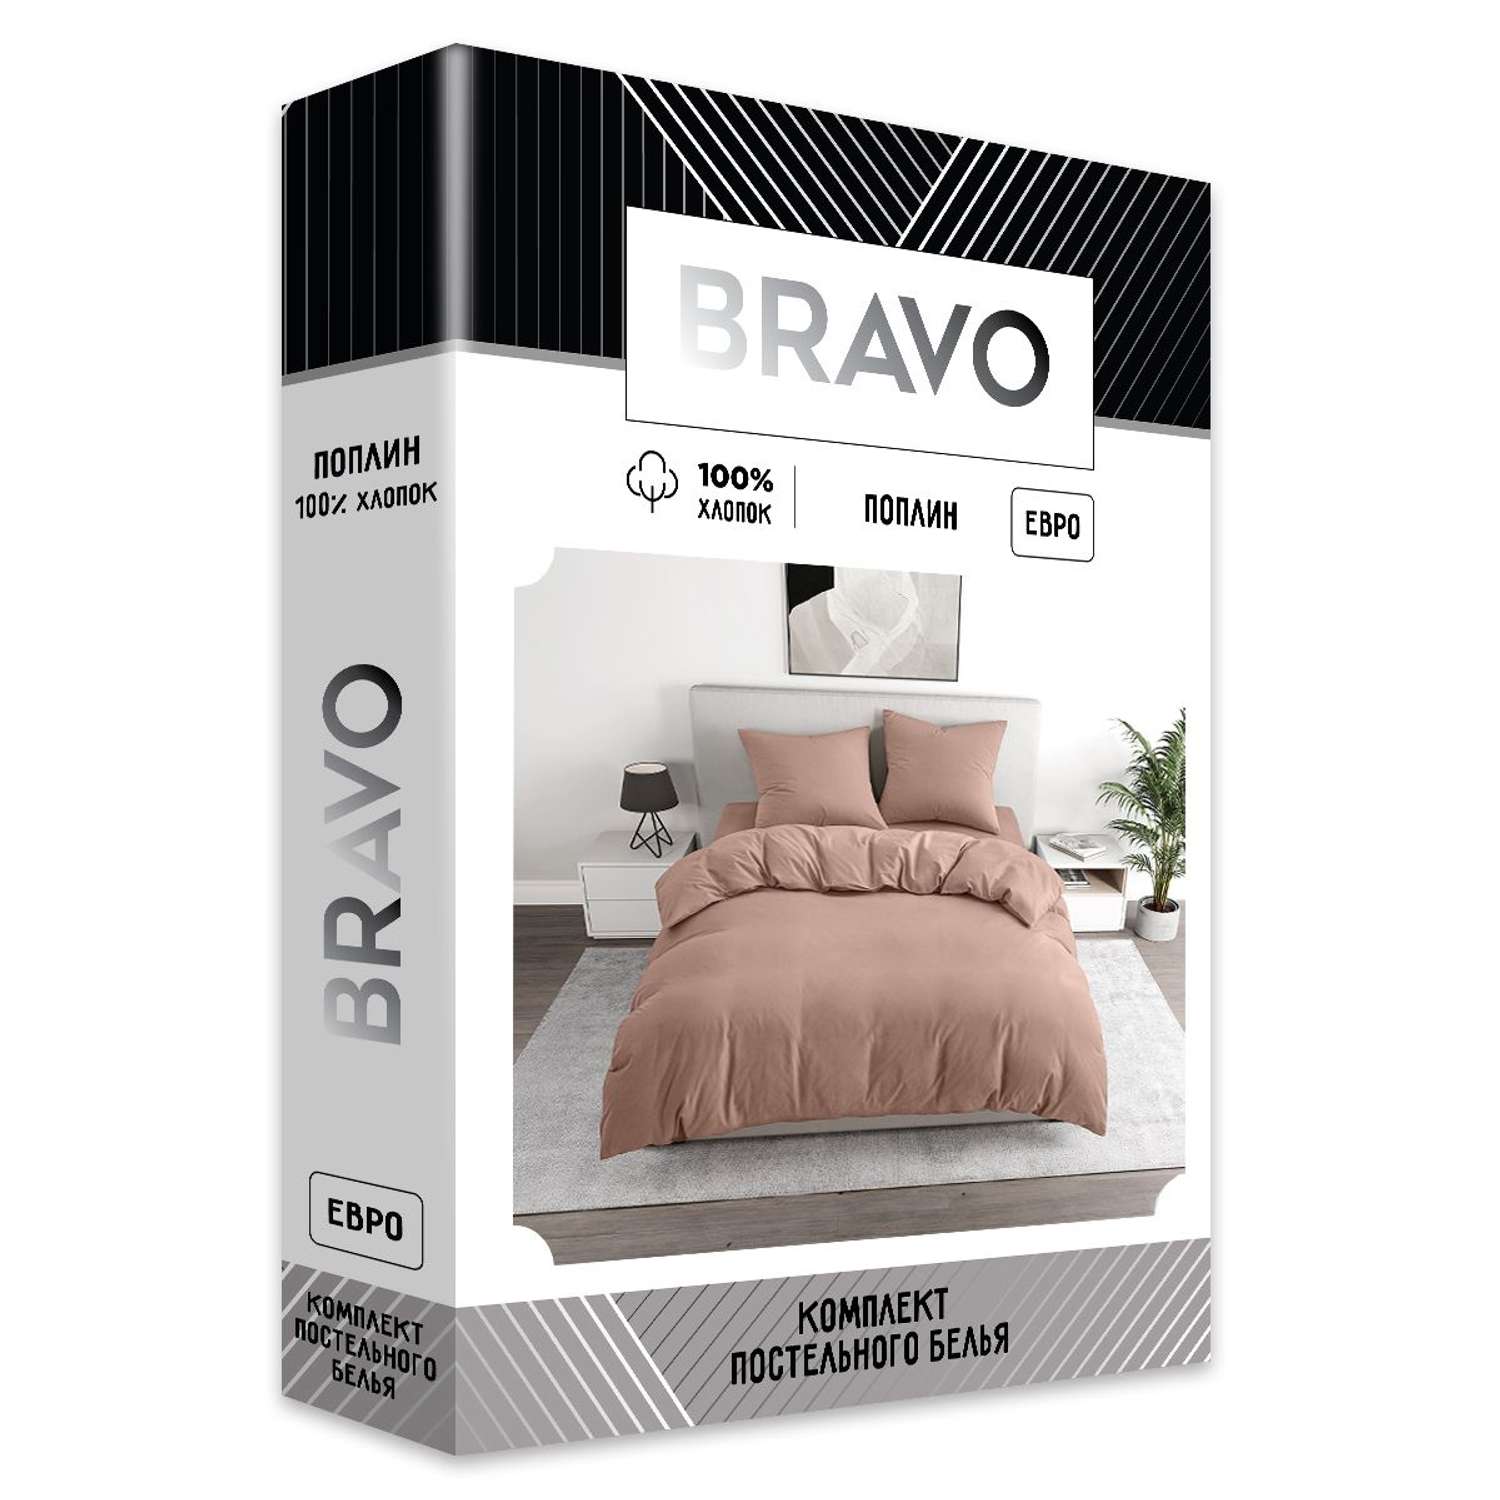 Комплект постельного белья BRAVO евро наволочки 70х70 рис.5112-1 пудровый - фото 5